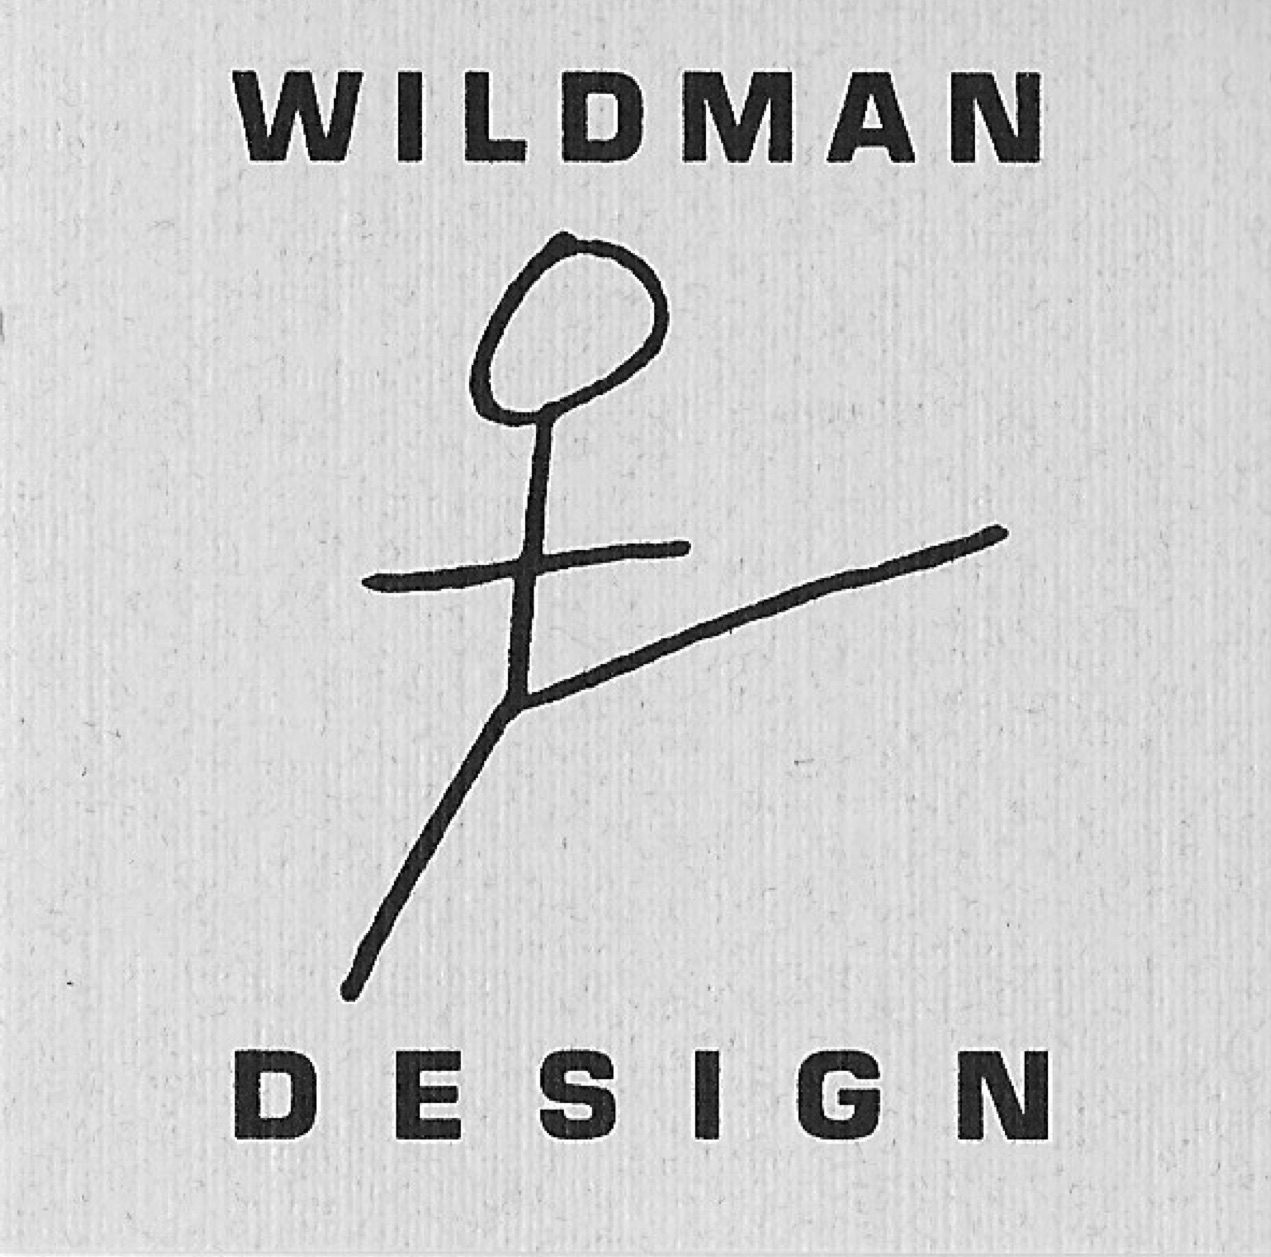 Wildman Design